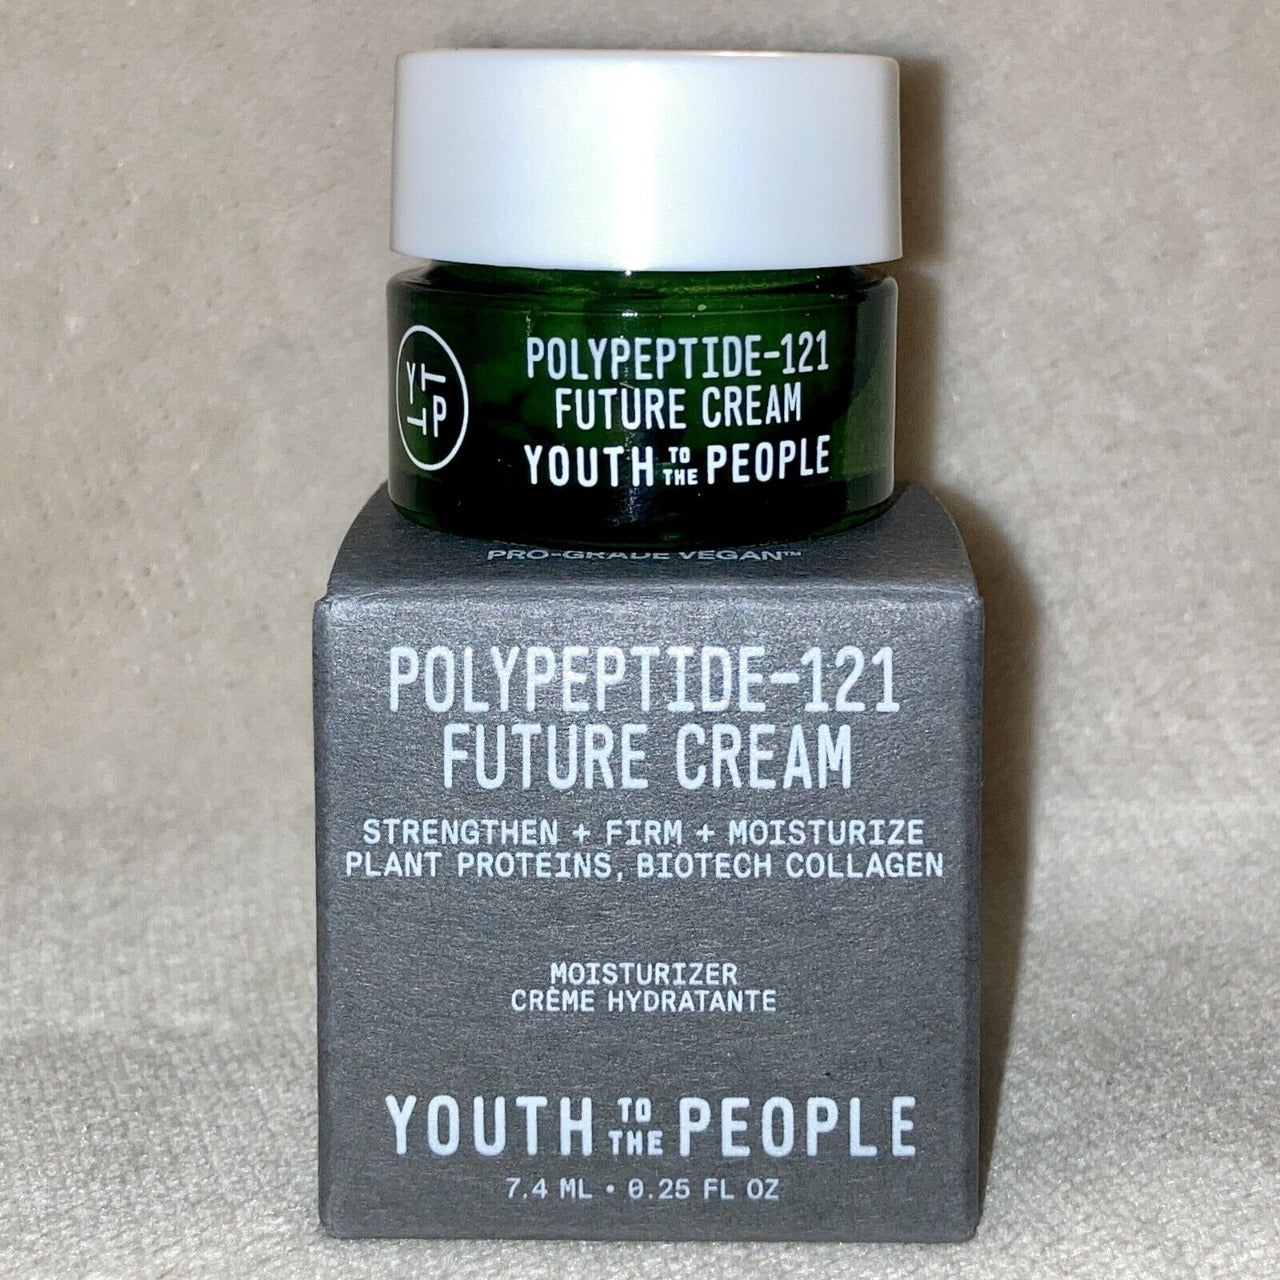 Polypeptide-121 Future Cream